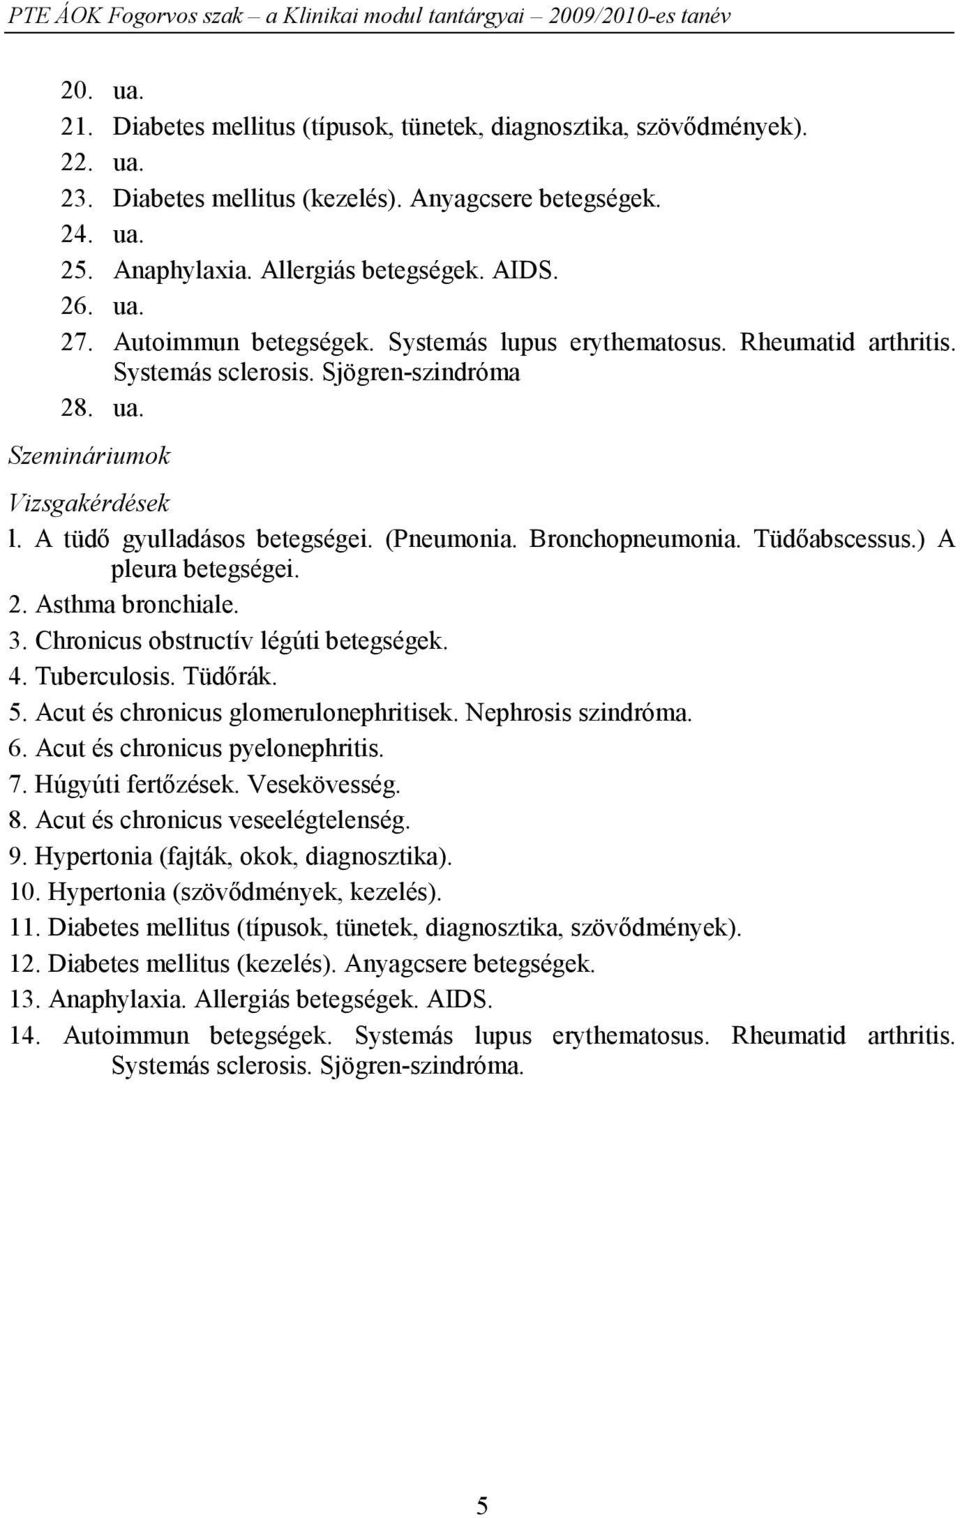 (Pneumonia. Bronchopneumonia. Tüdőabscessus.) A pleura betegségei. 2. Asthma bronchiale. 3. Chronicus obstructív légúti betegségek. 4. Tuberculosis. Tüdőrák. 5. Acut és chronicus glomerulonephritisek.